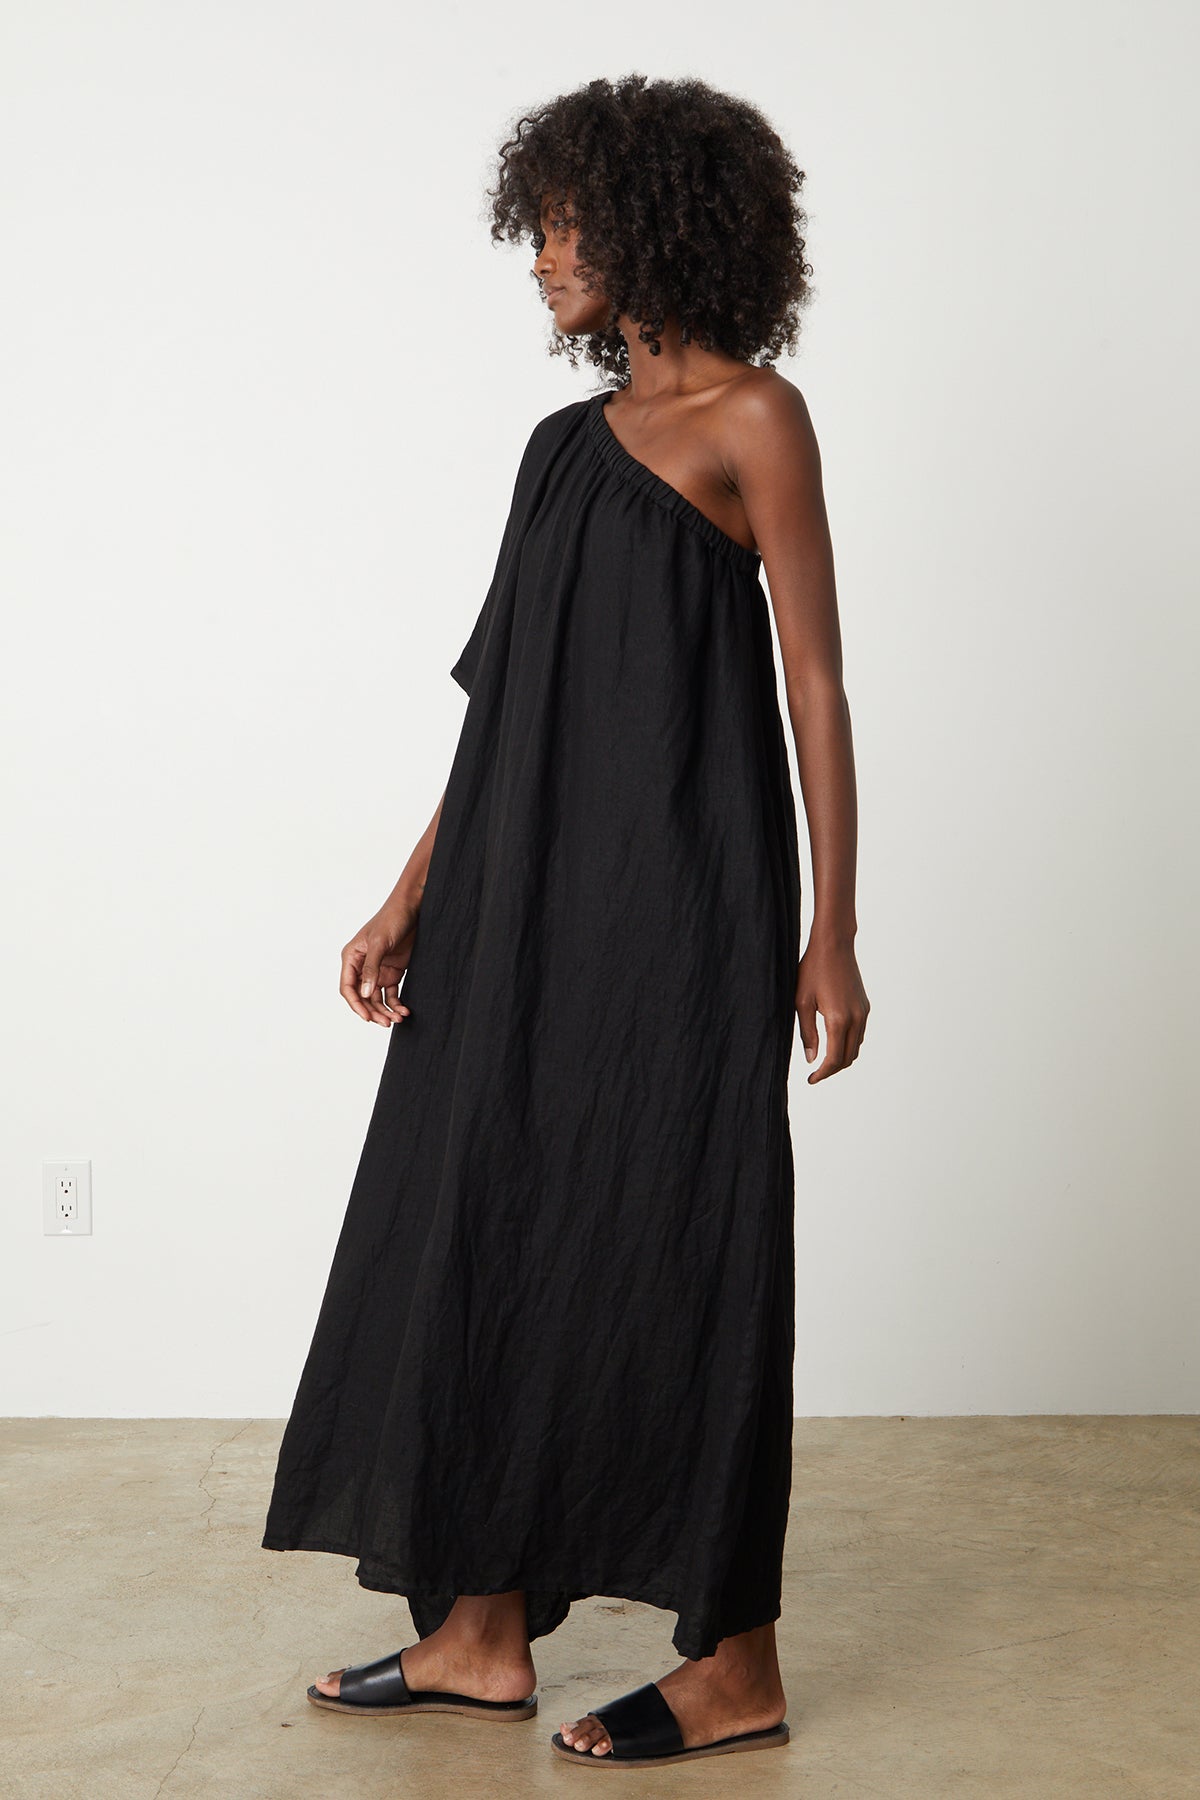 Andrea Linen Dress in black with black slides full length side-26255699443905